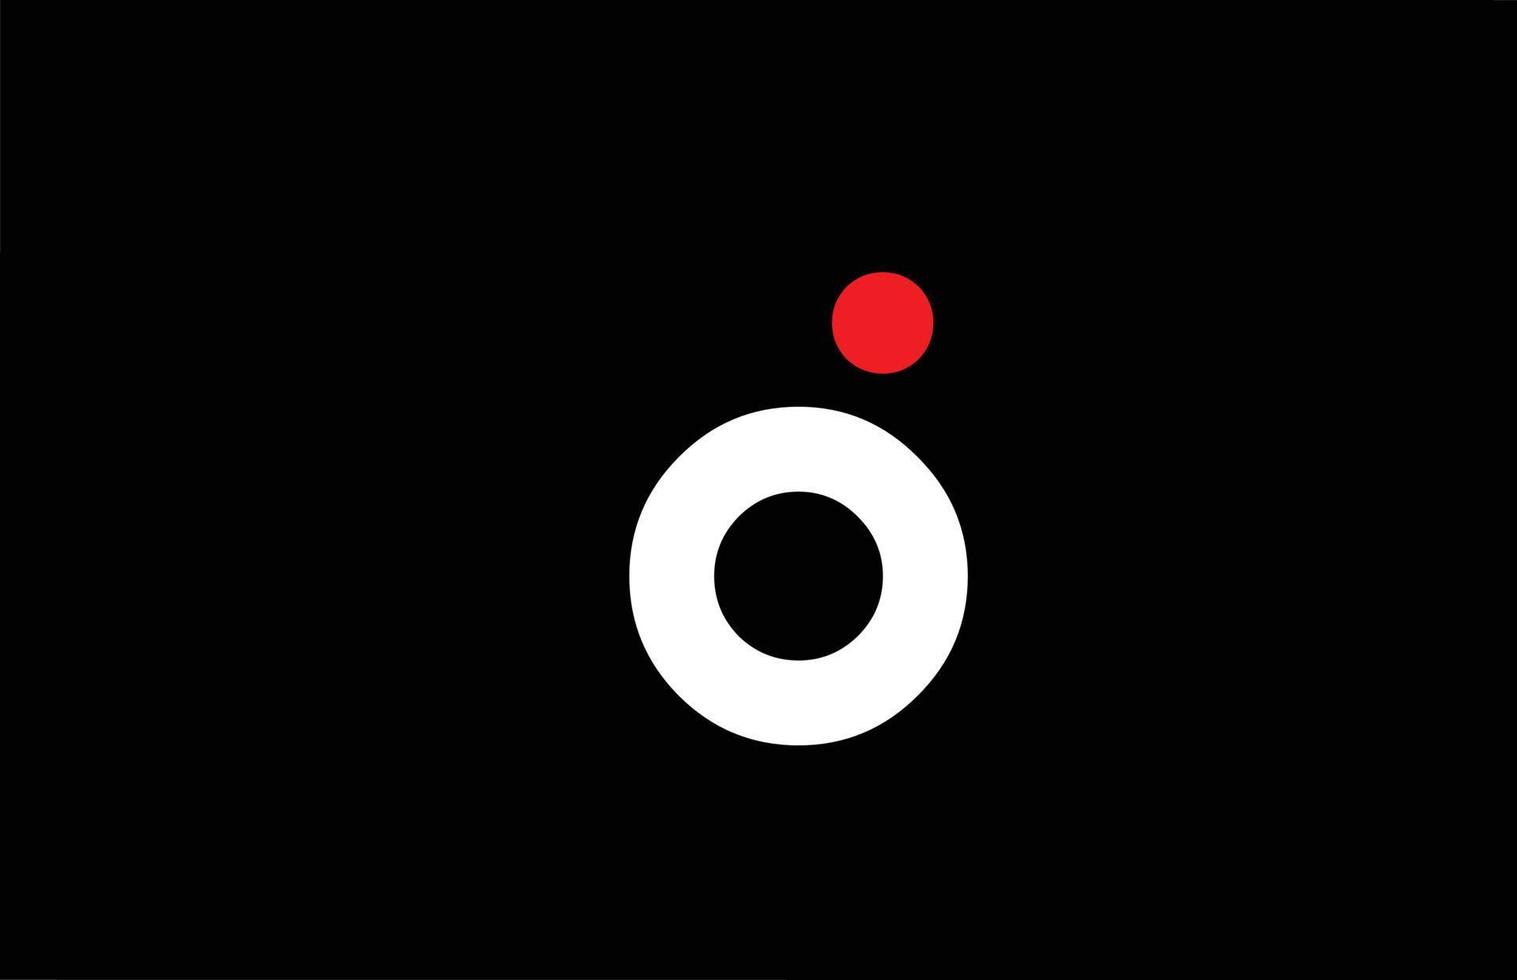 d-Alphabet-Buchstaben-Symbol-Logo-Design. kreative vorlage für unternehmen und business mit rotem punkt in weiß und schwarz vektor